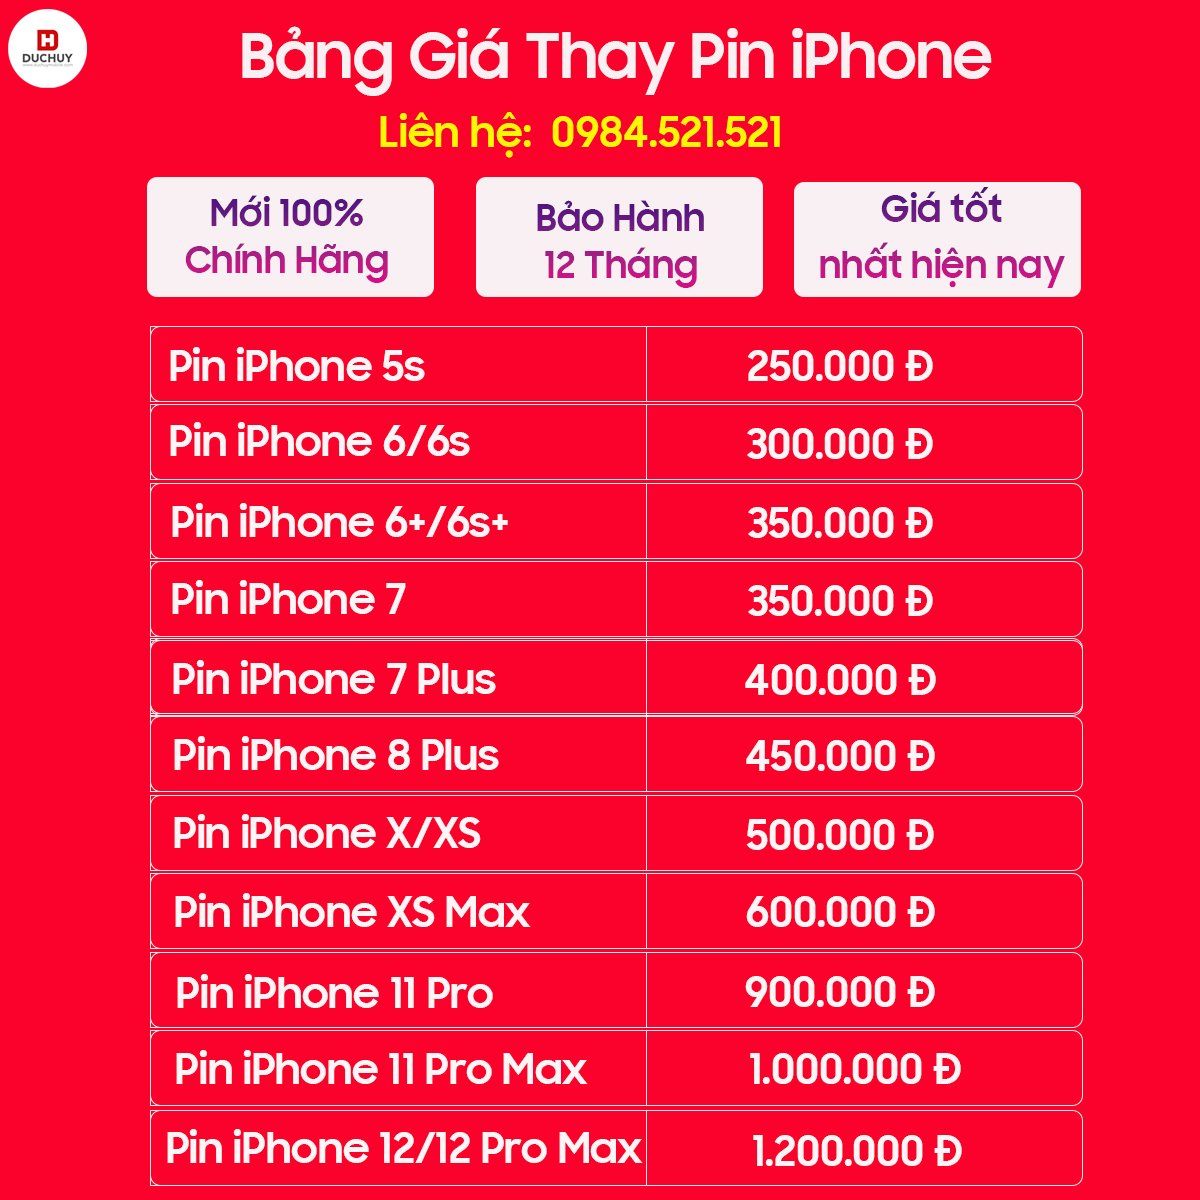 Bảng giá thay pin iphone